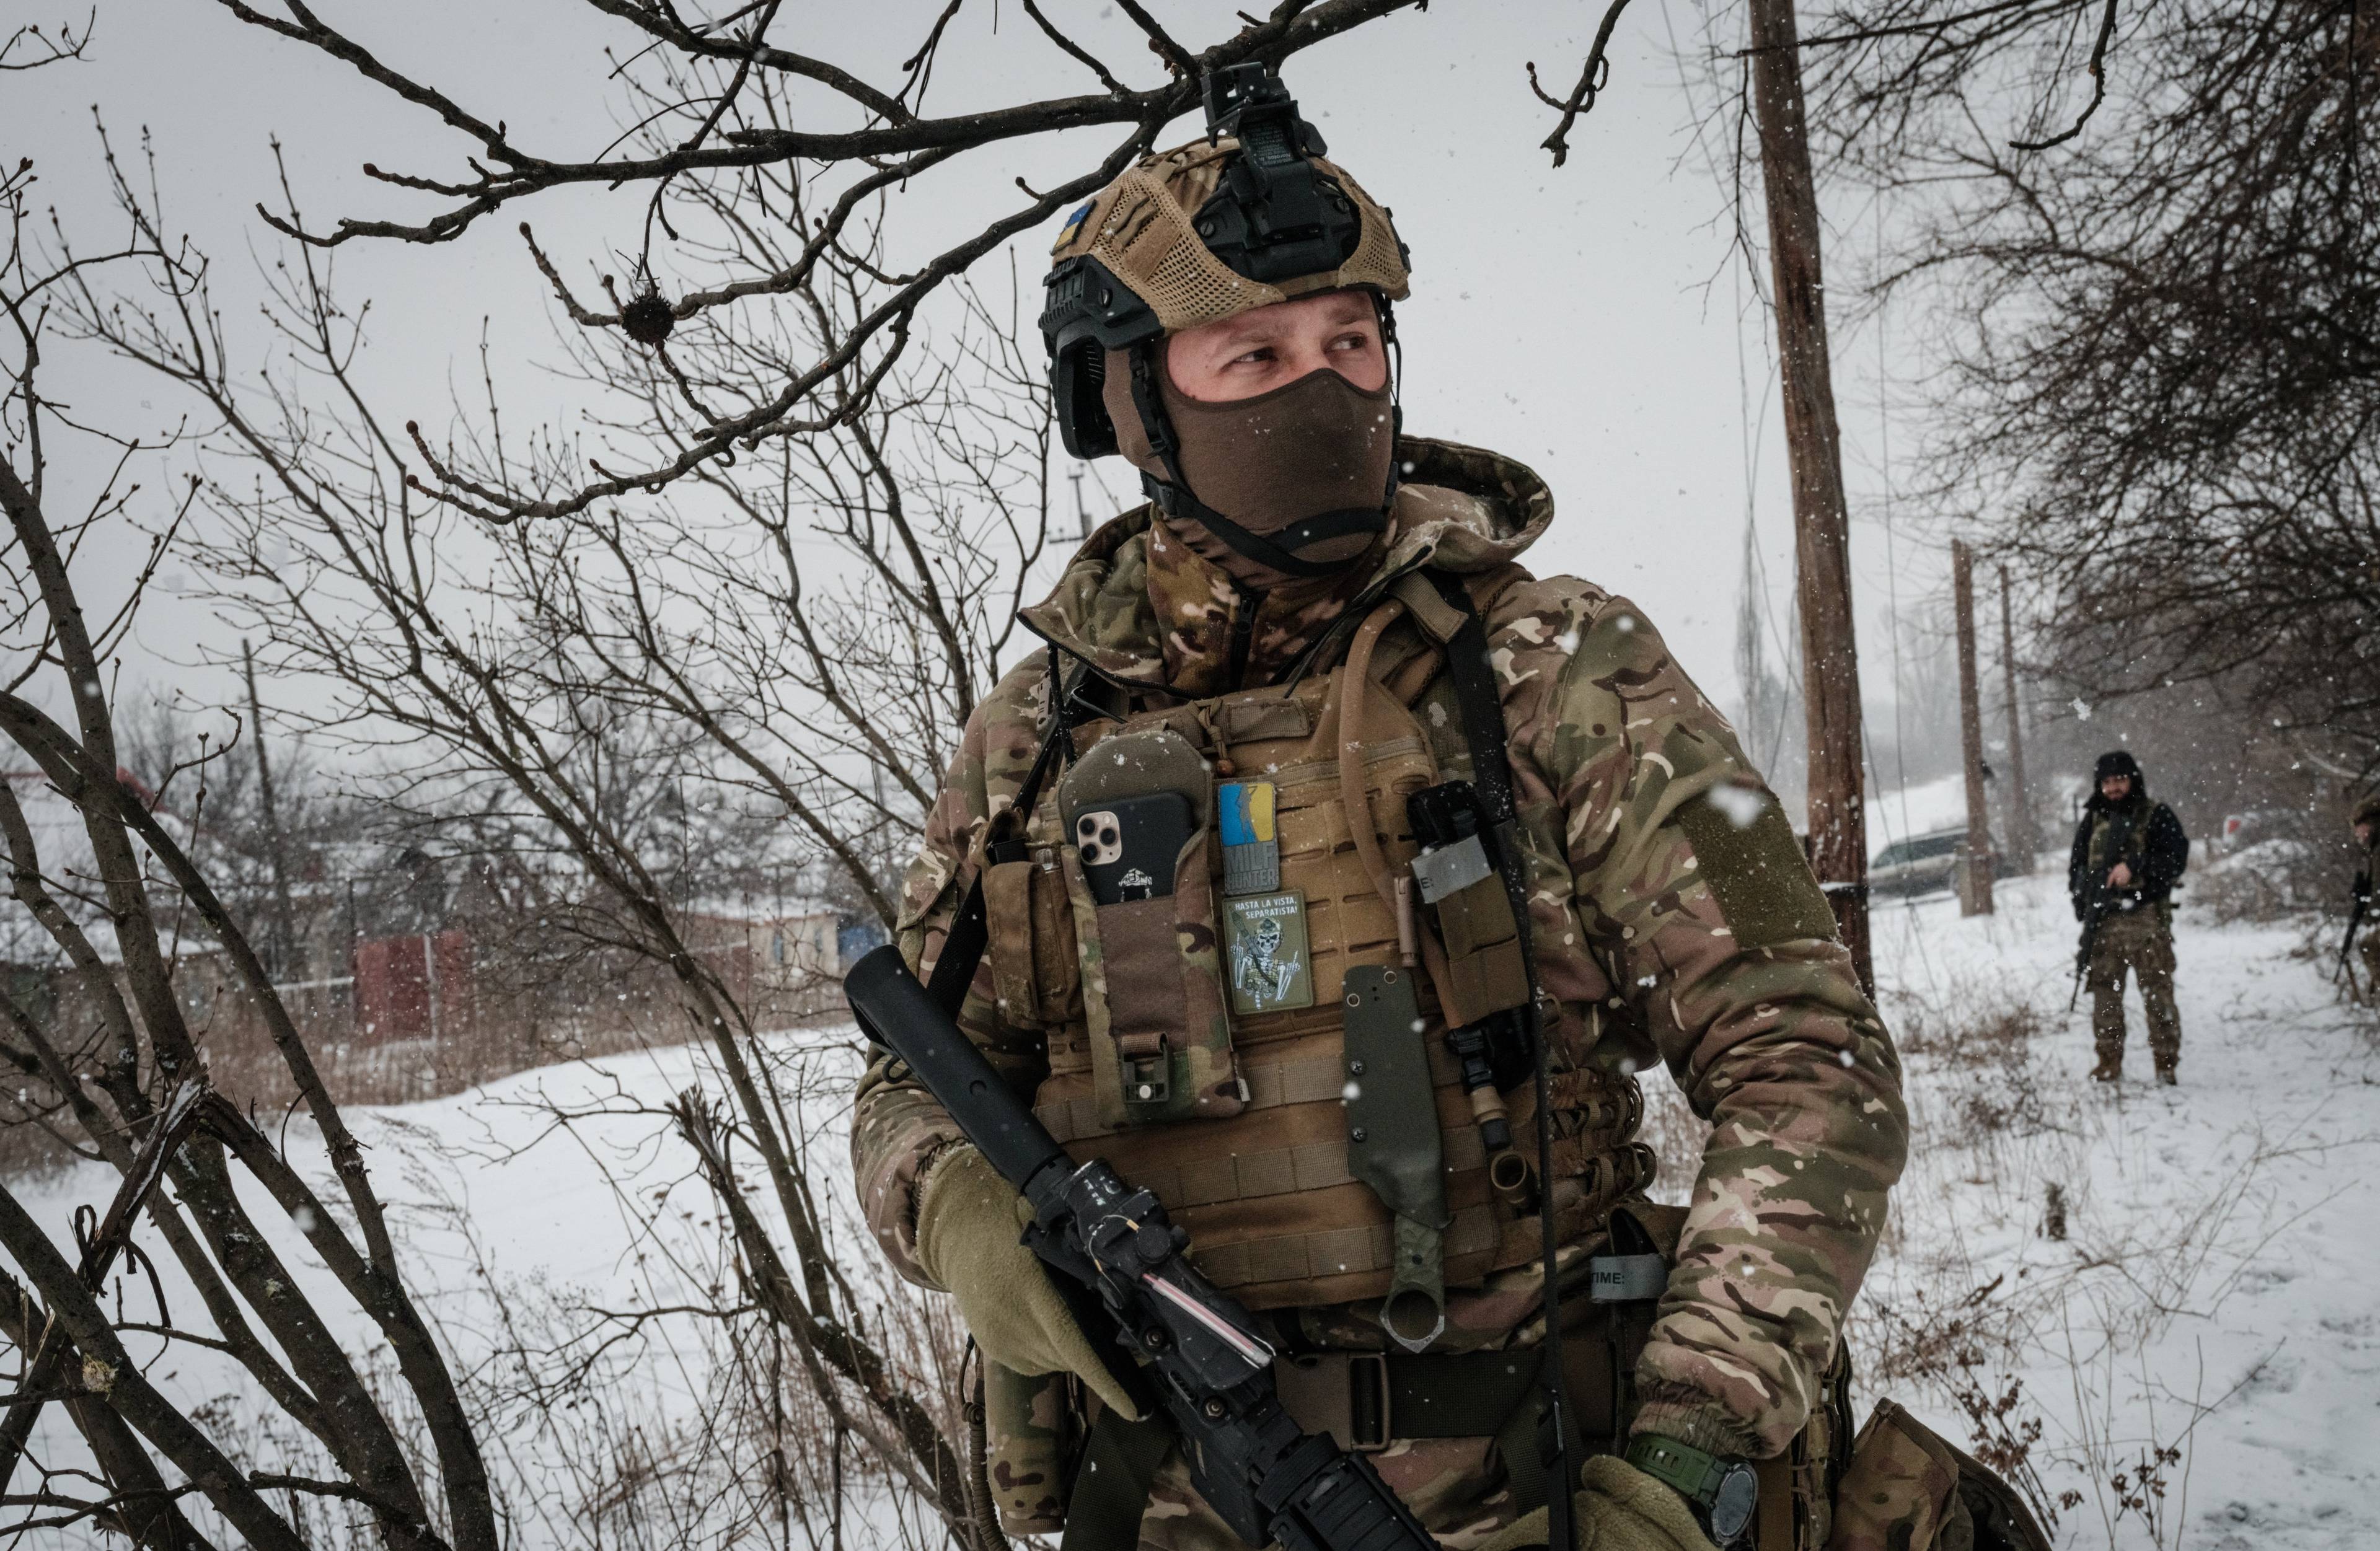 Zołnierz w bojowym rynsztunku z ukraińskimi oznaczeniami stoi na ośnieżonym polu